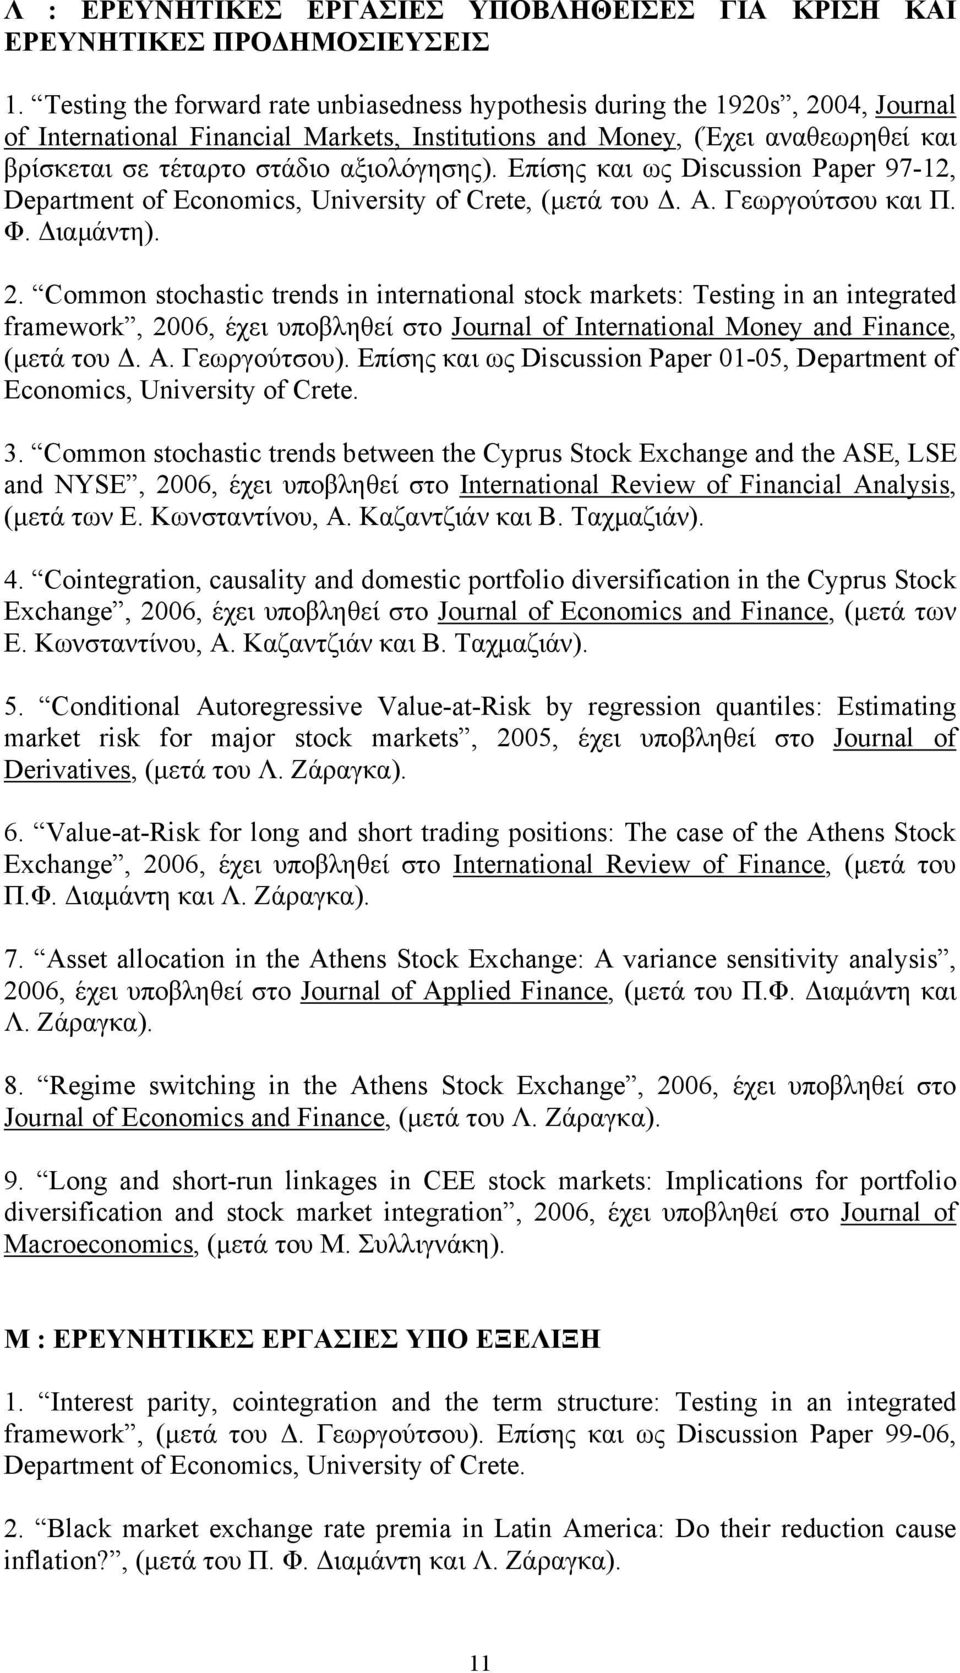 αξιολόγησης). Επίσης και ως Discussion Paper 97-12, Department of Economics, University of Crete, (µετά του. Α. Γεωργούτσου και Π. Φ. ιαµάντη). 2.